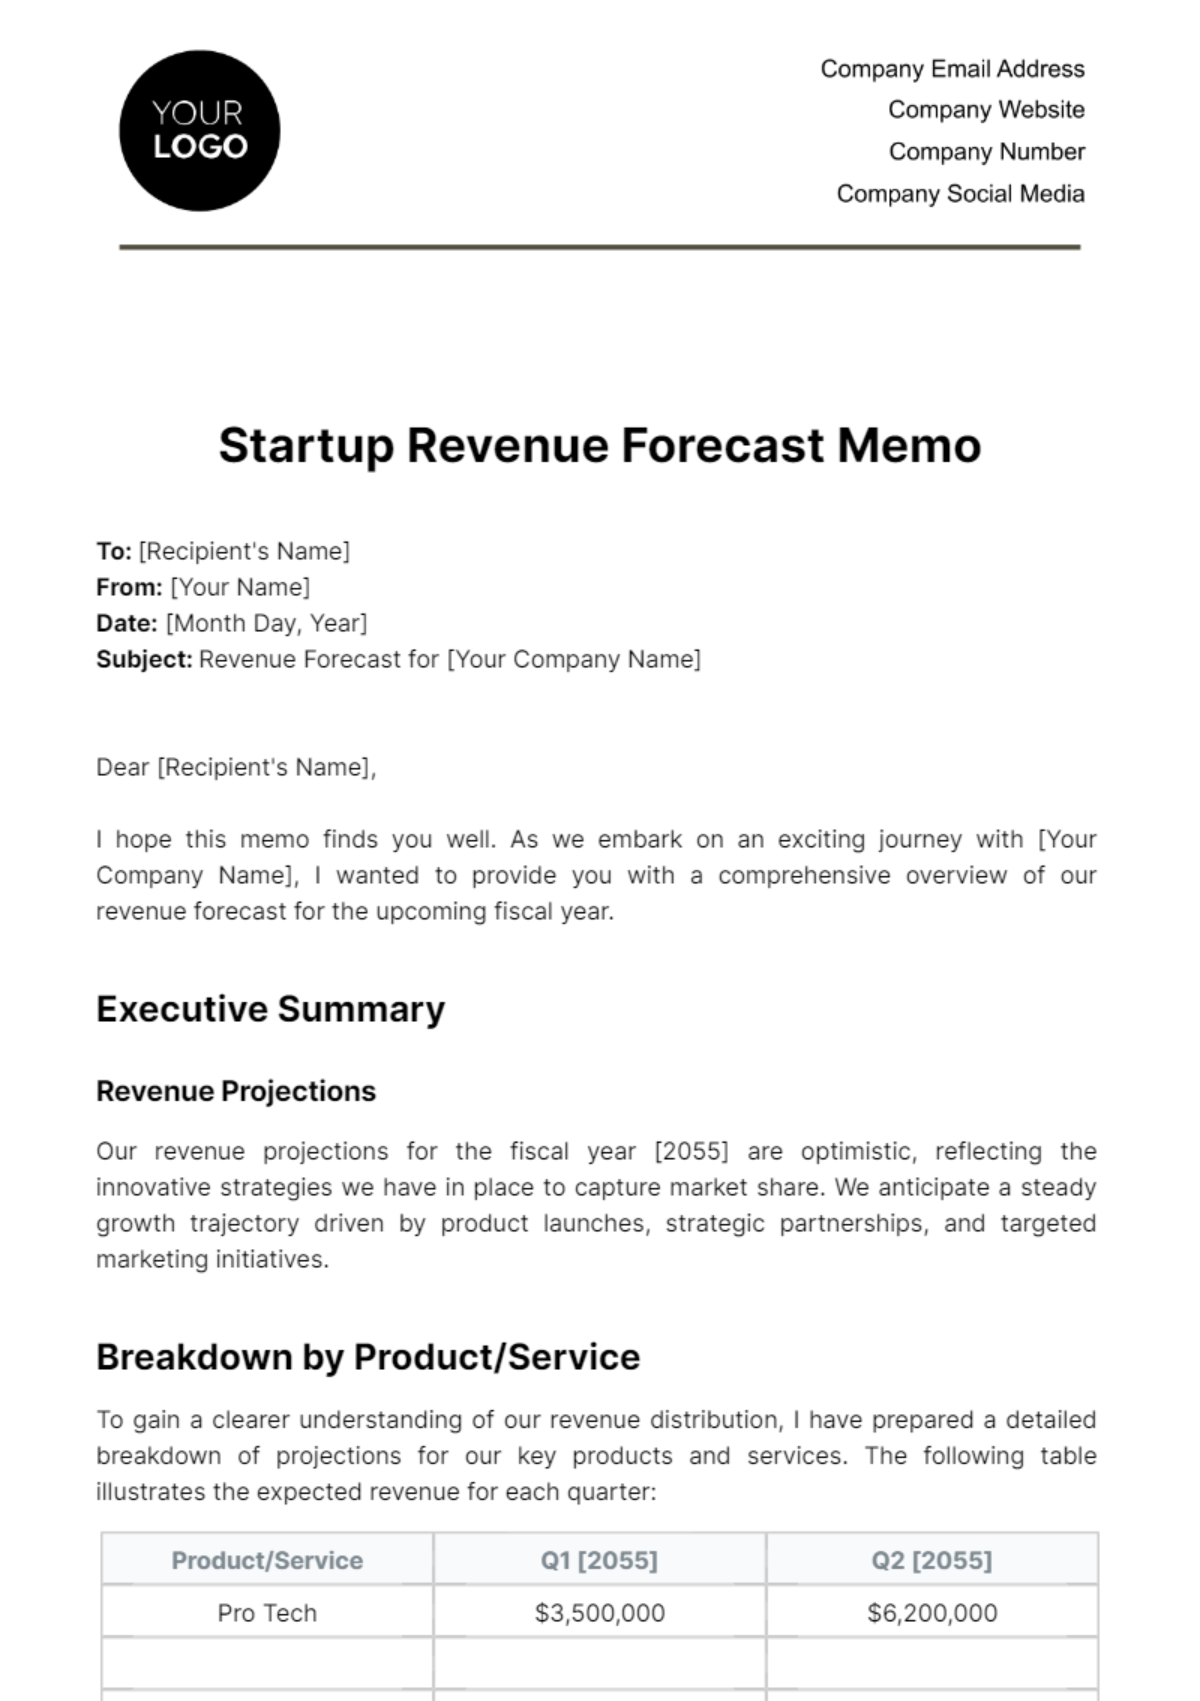 Startup Revenue Forecast Memo Template